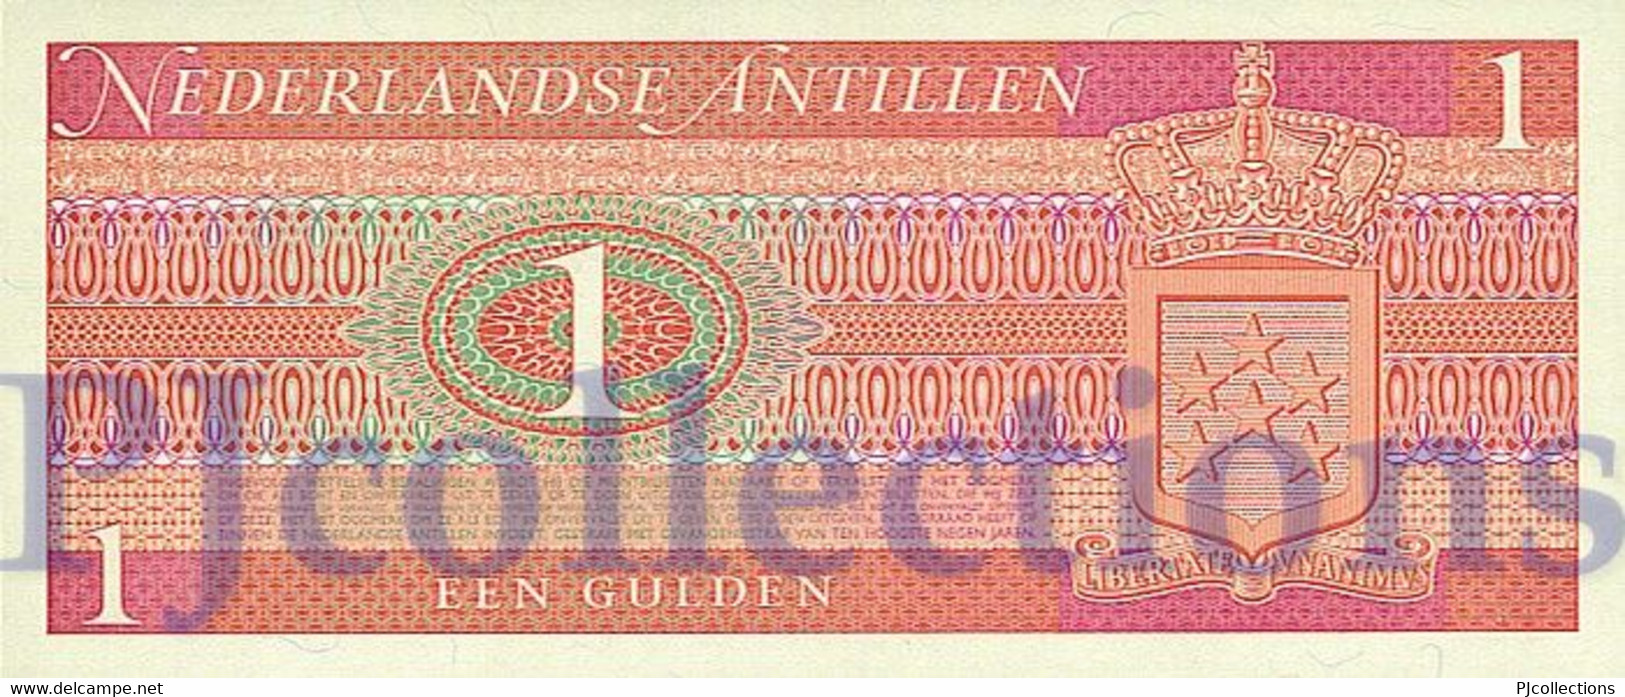 NETHERLANDS ANTILLES 1 GULDEN 1970 PICK 20a UNC - Niederländische Antillen (...-1986)